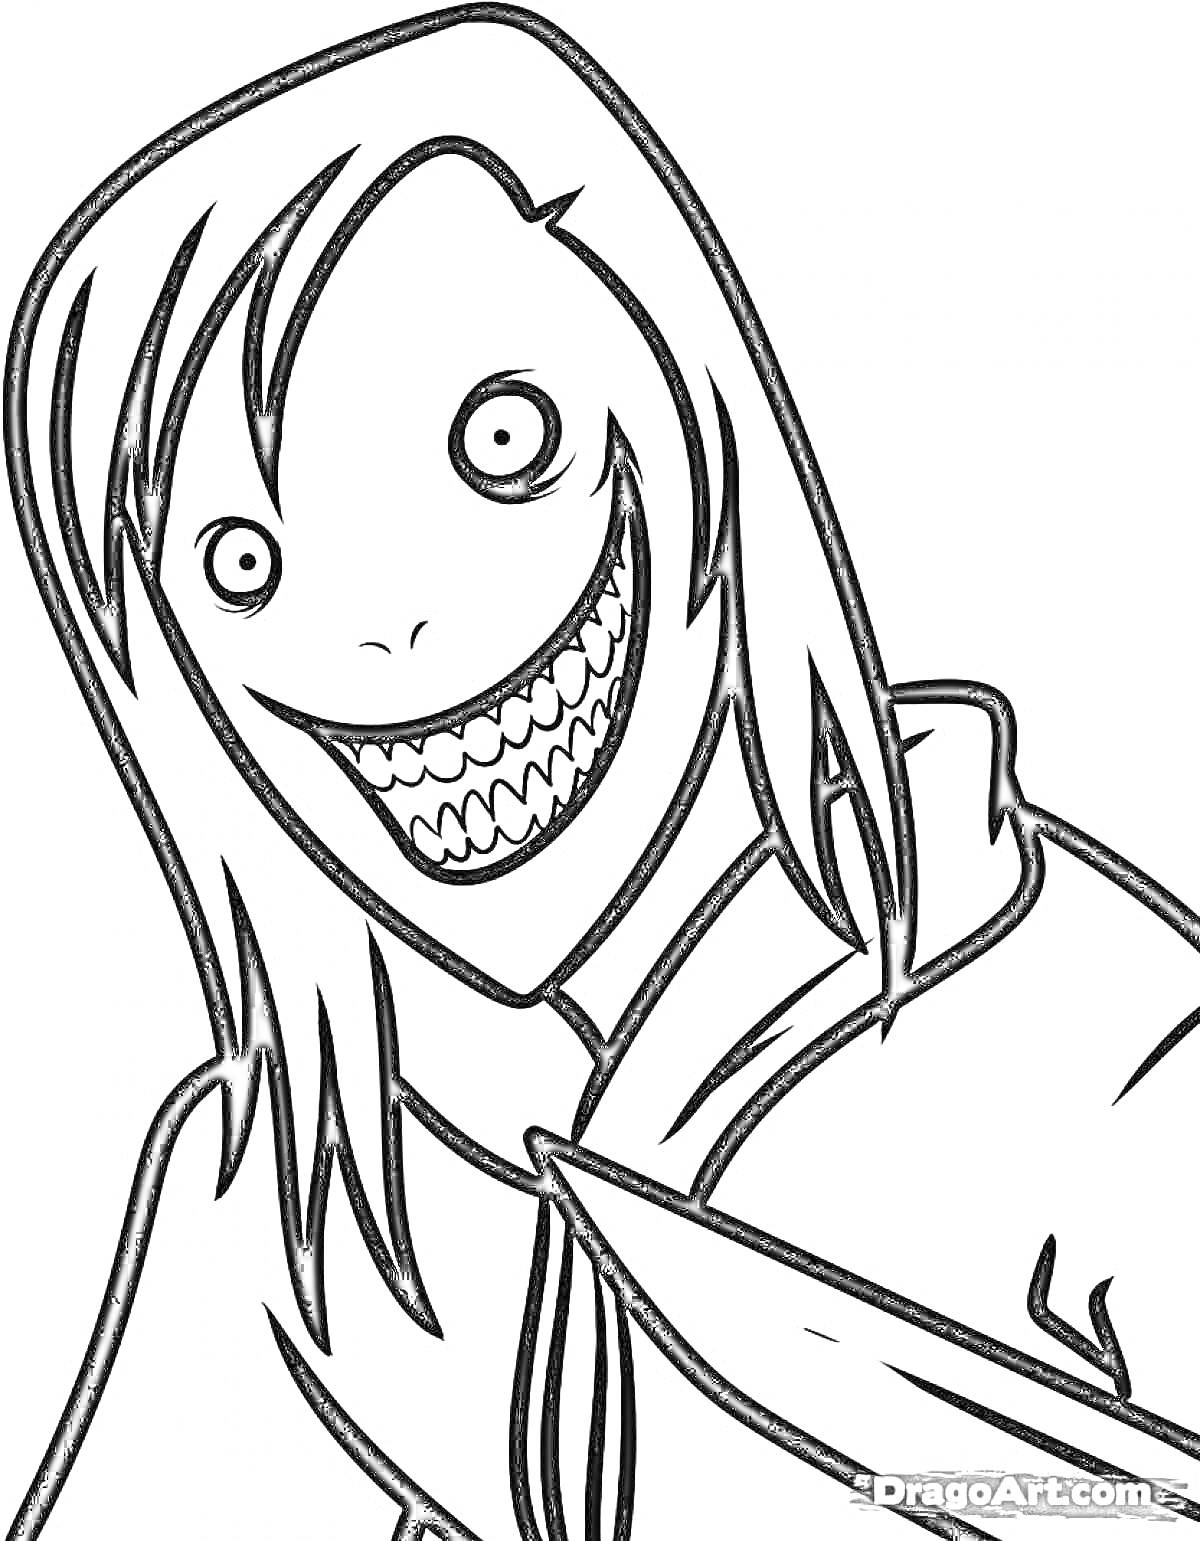 Рисунок в стиле Момо с длинными волосами и зловещей улыбкой